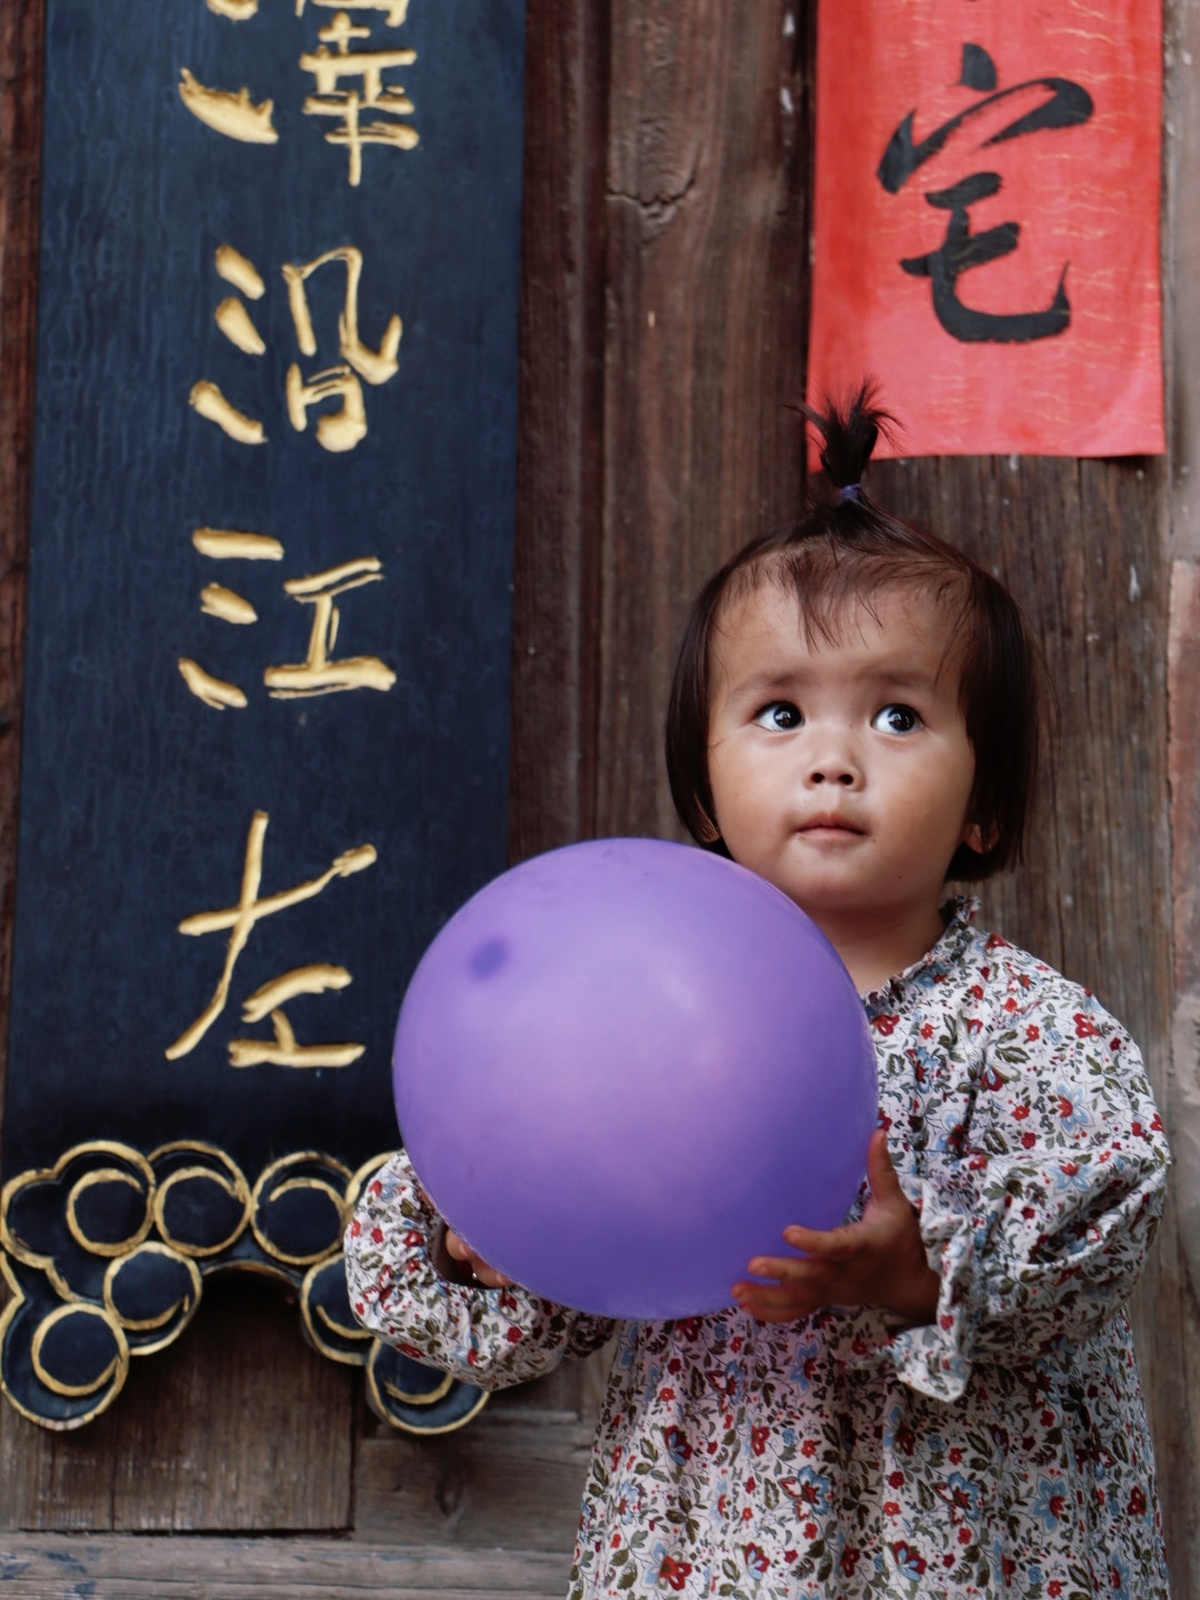 一个小女孩拿着一个紫色的球在玩一个小球。